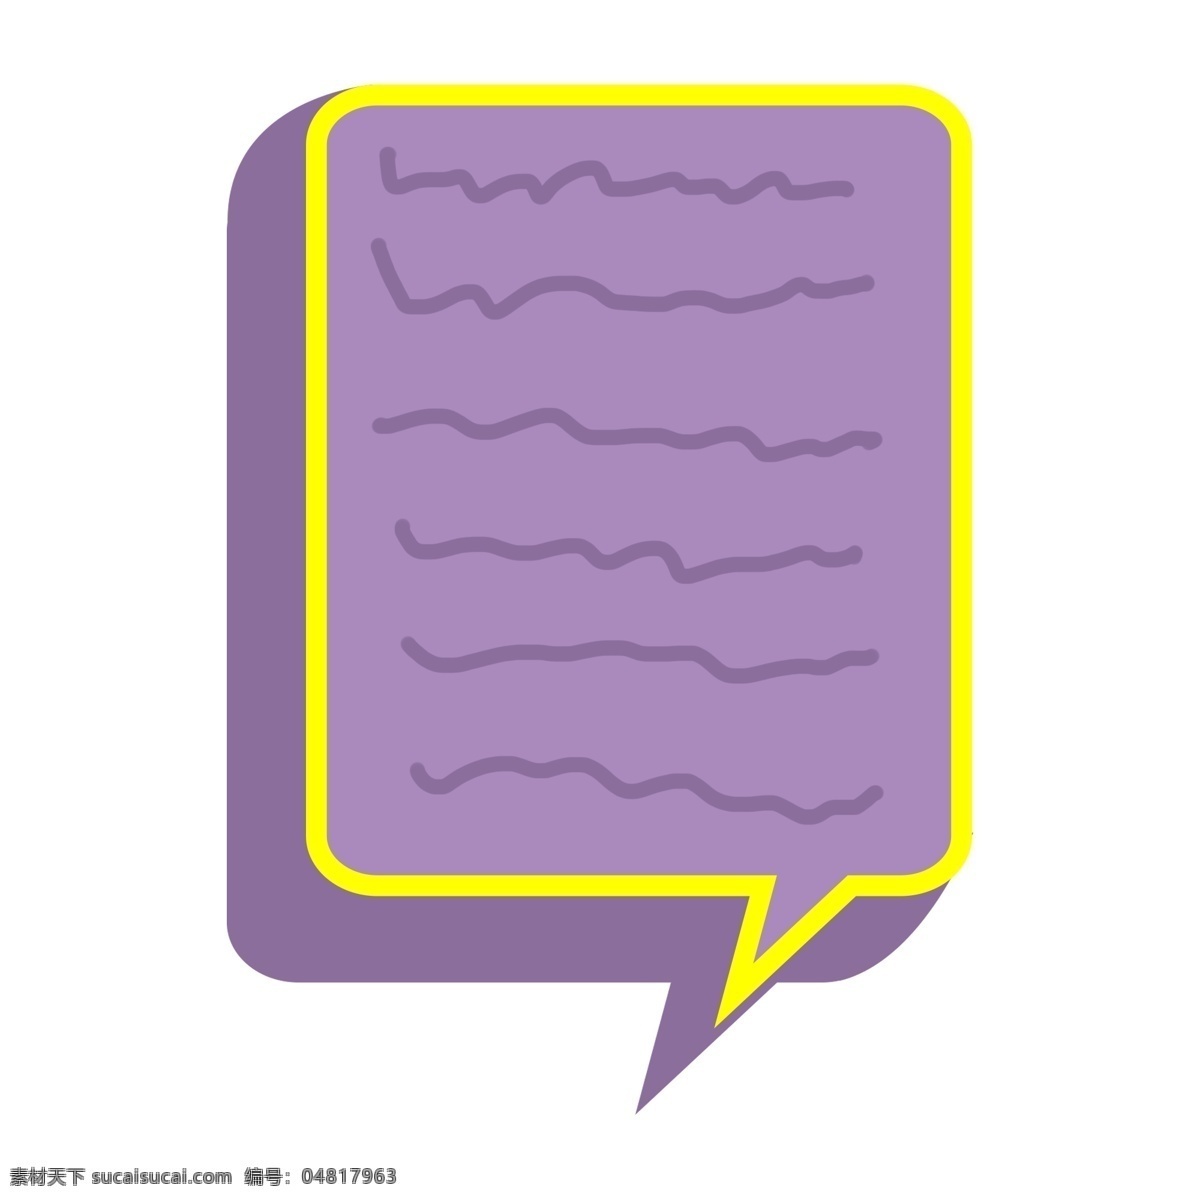 香芋 紫 紫色 撞 色 对话框 立体 ui 图标 香芋紫 撞色 黄色边框 可爱 卡通 立体ui图标 立体对话框